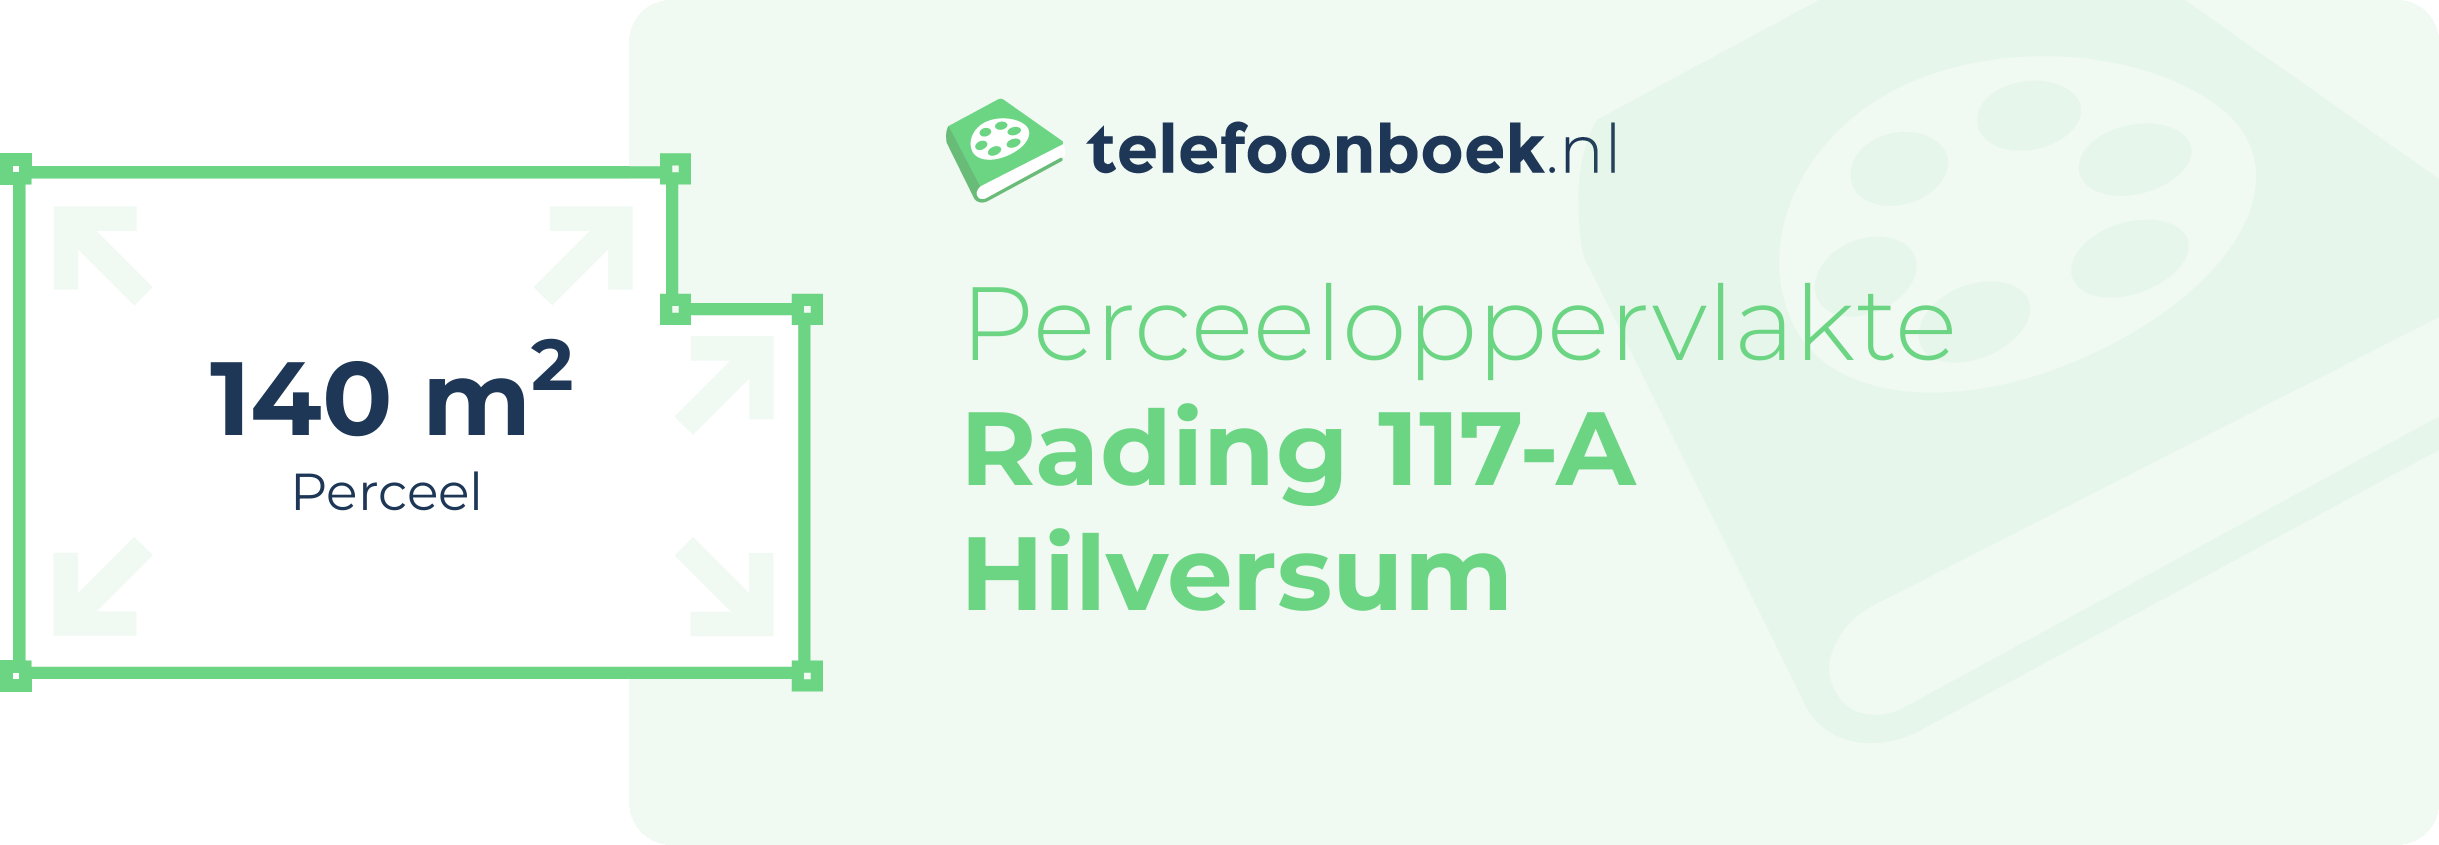 Perceeloppervlakte Rading 117-A Hilversum